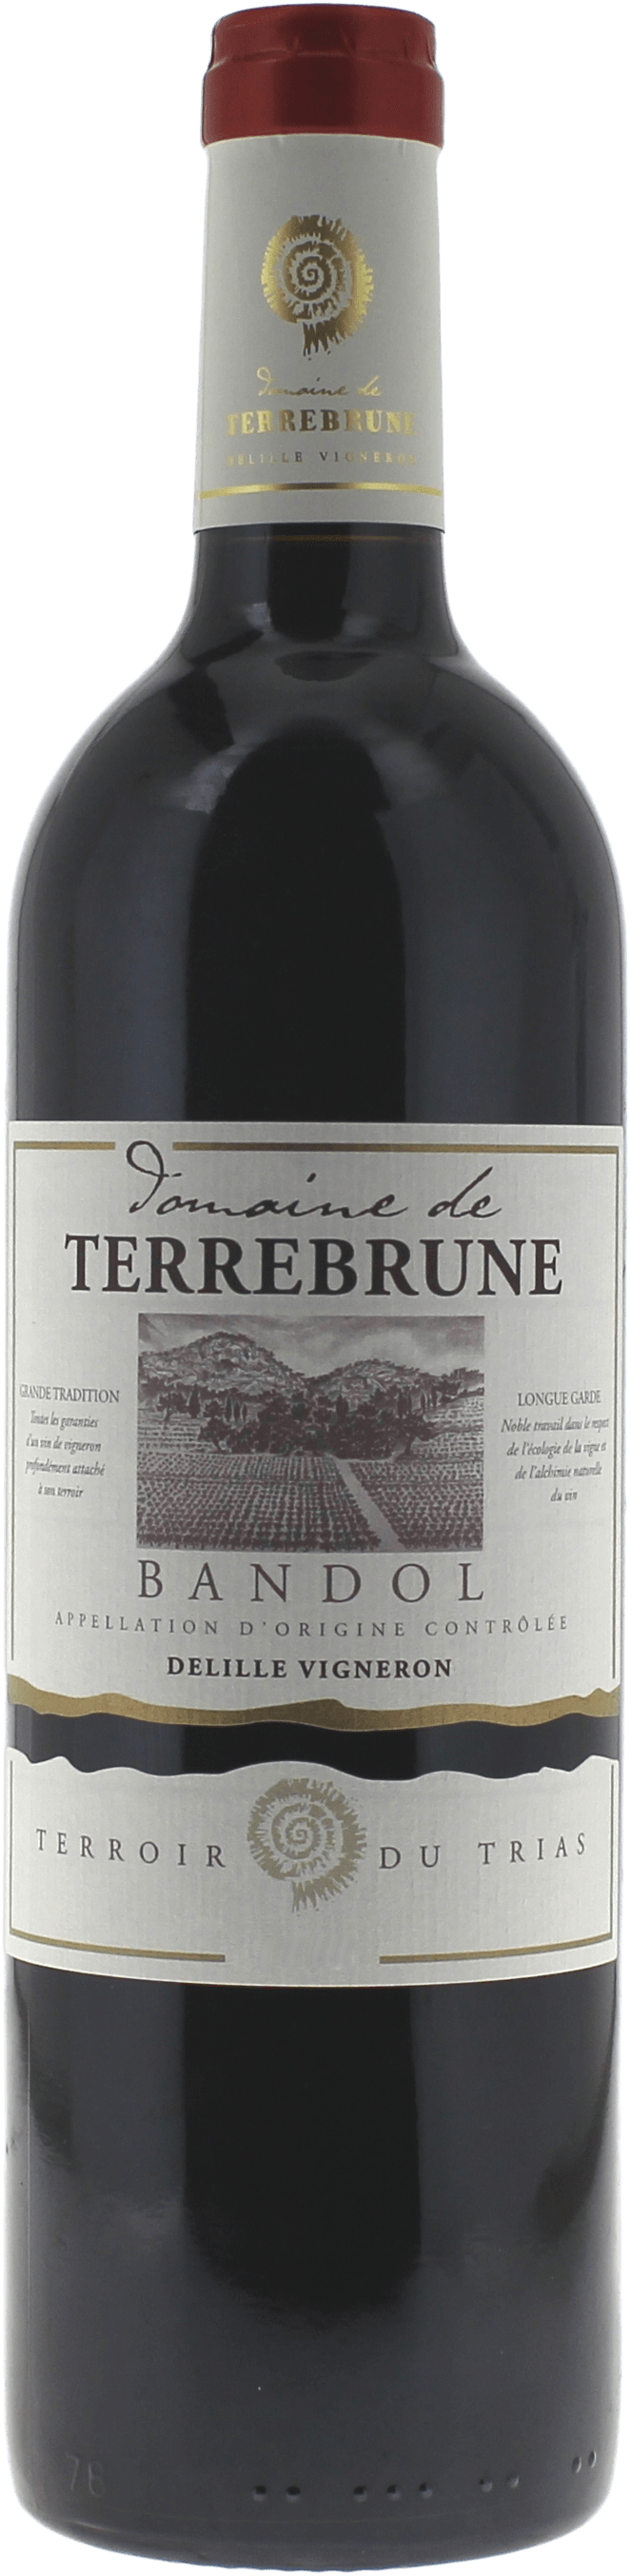 Bandol domaine terrebrune rouge 2016  Bandol, Provence